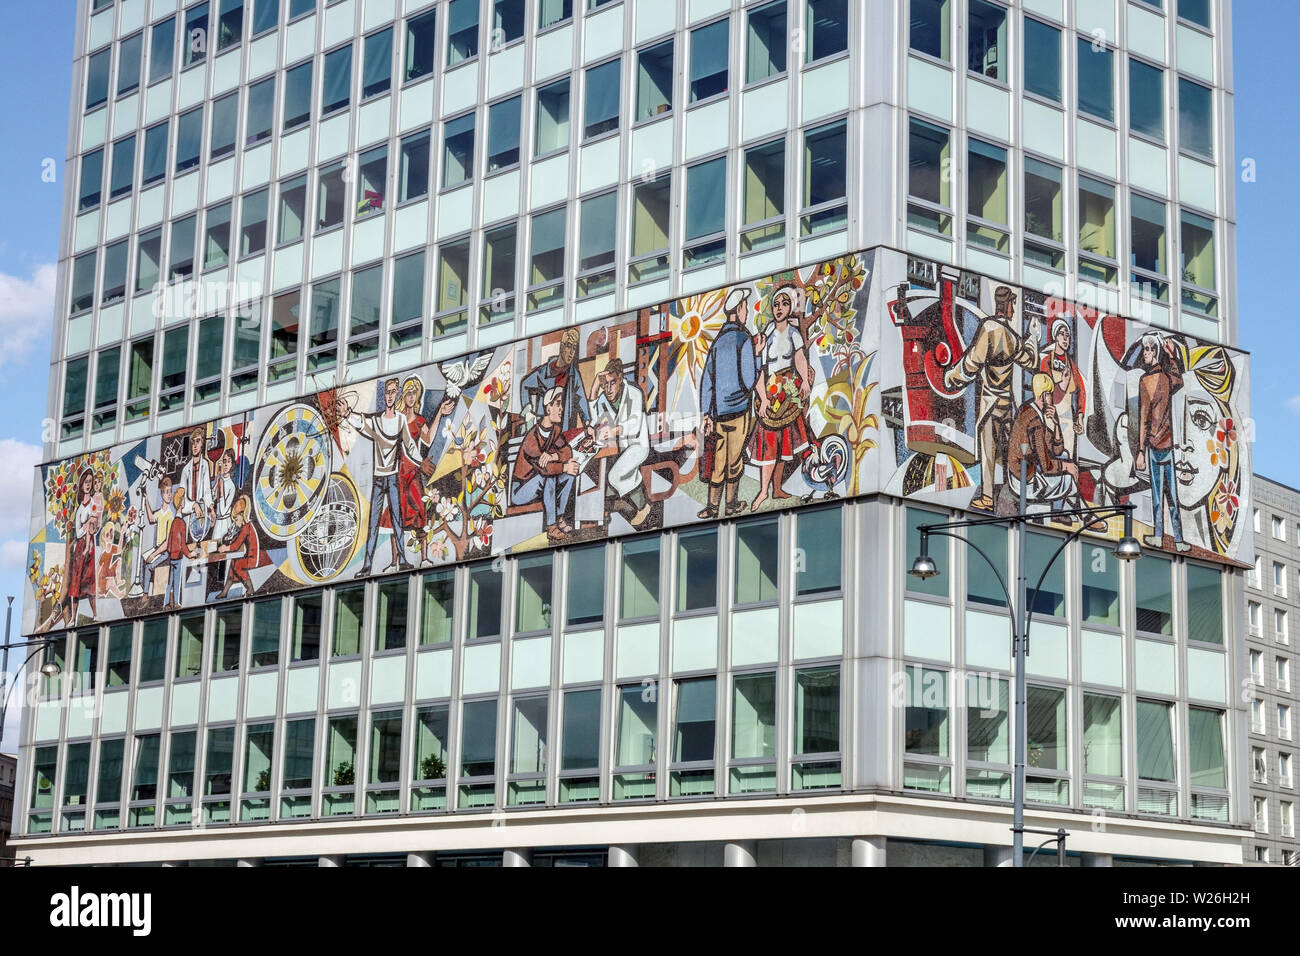 Mosaïque de réalisme socialiste sur un bâtiment des années 1960, Berlin Haus des Lehrers Allemagne Banque D'Images